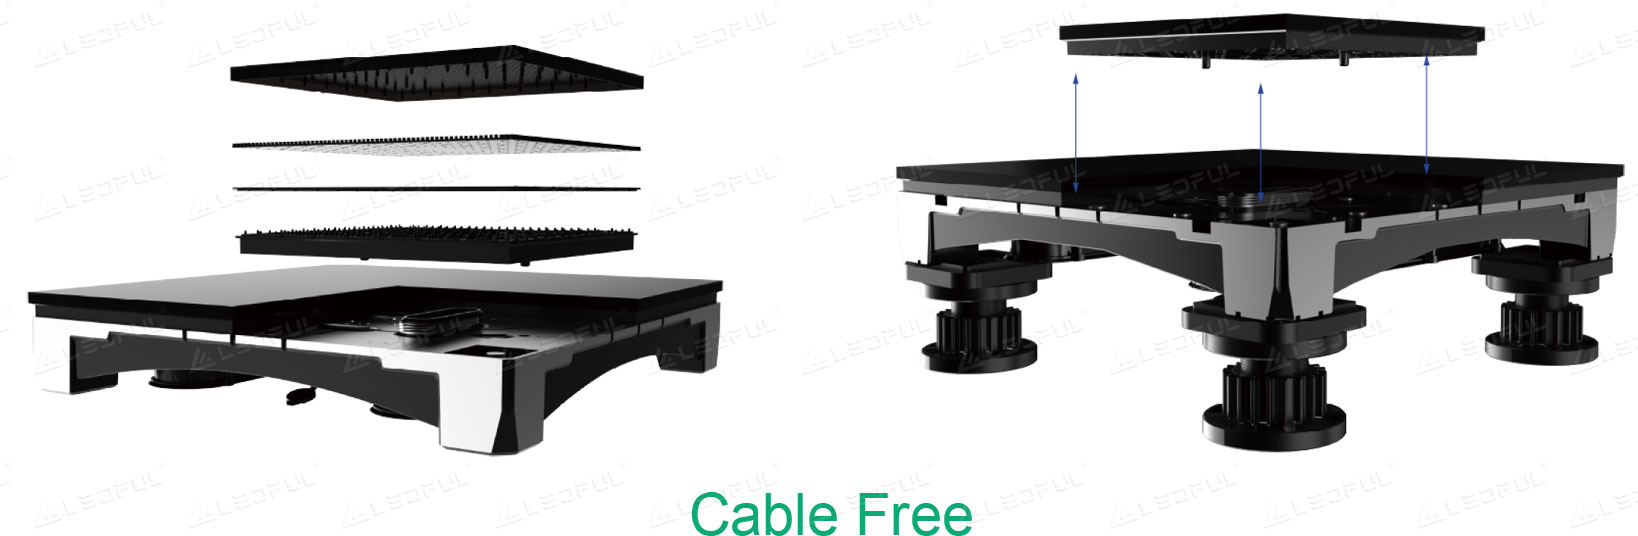 Câble de conception intégrée gratuit